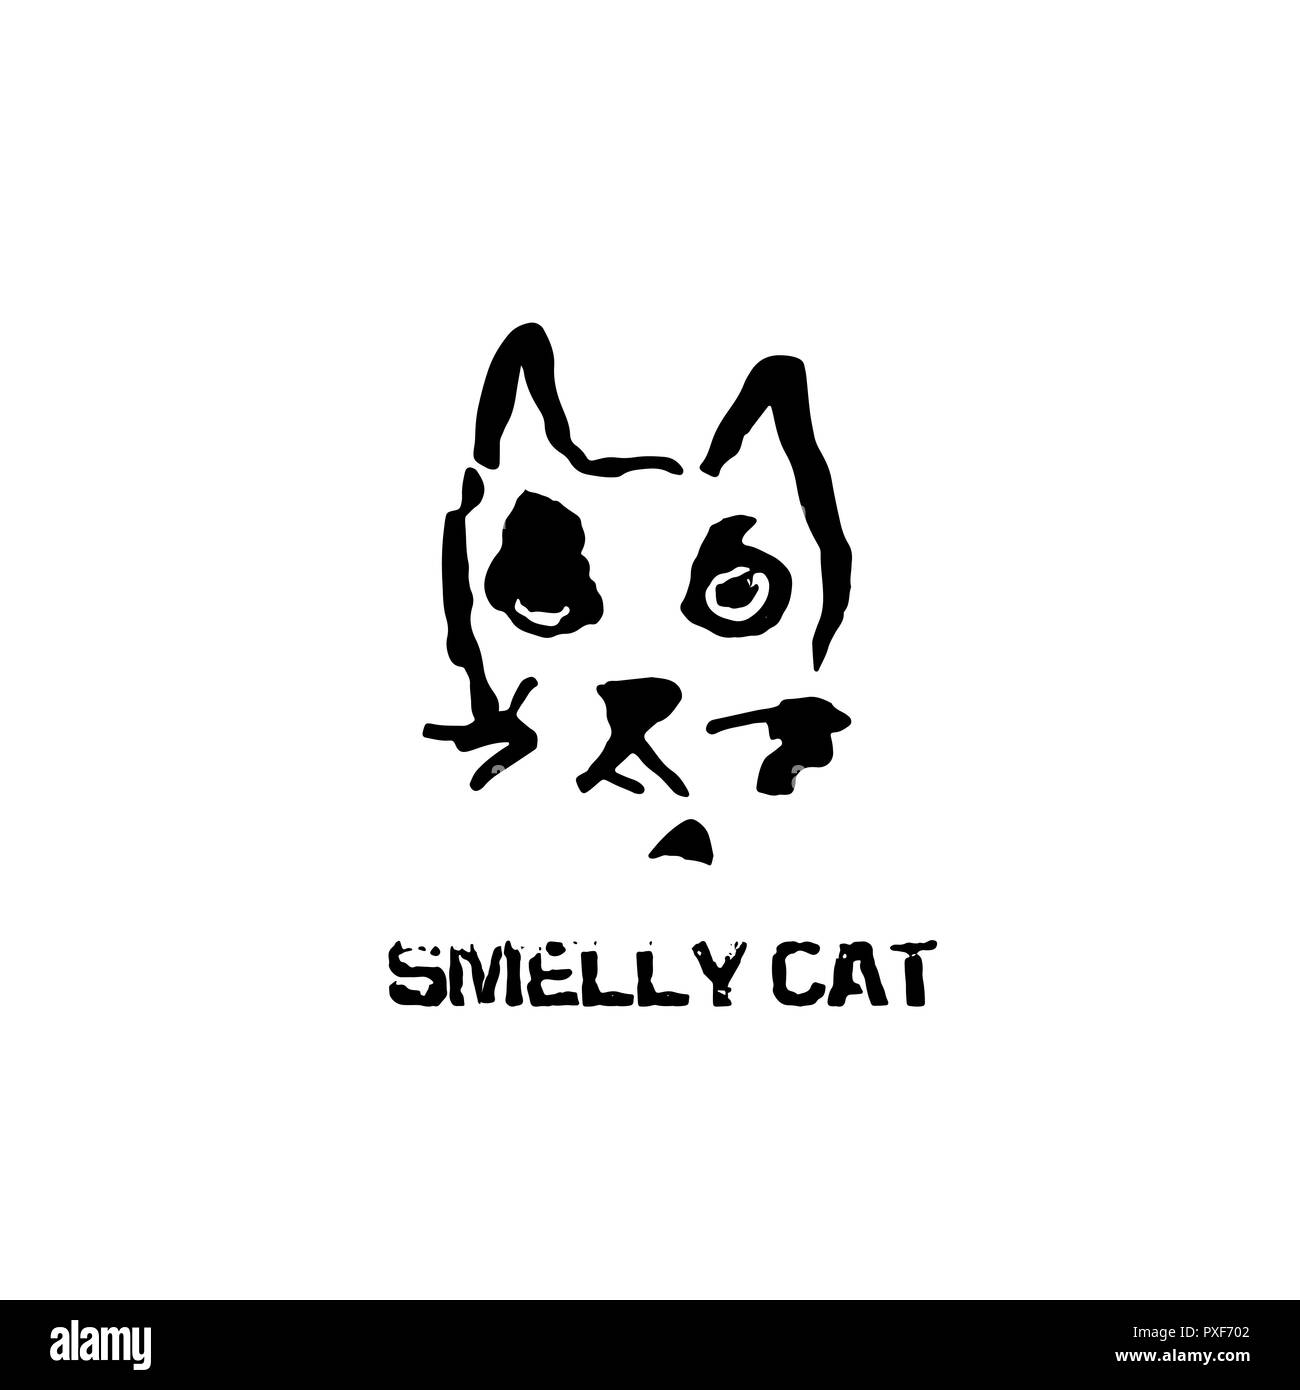 Smelly cat. Testa di gatto vettore. Inchiostro moderno disegno spazzola testa di animale. Illustrazione Vettoriale. Illustrazione Vettoriale